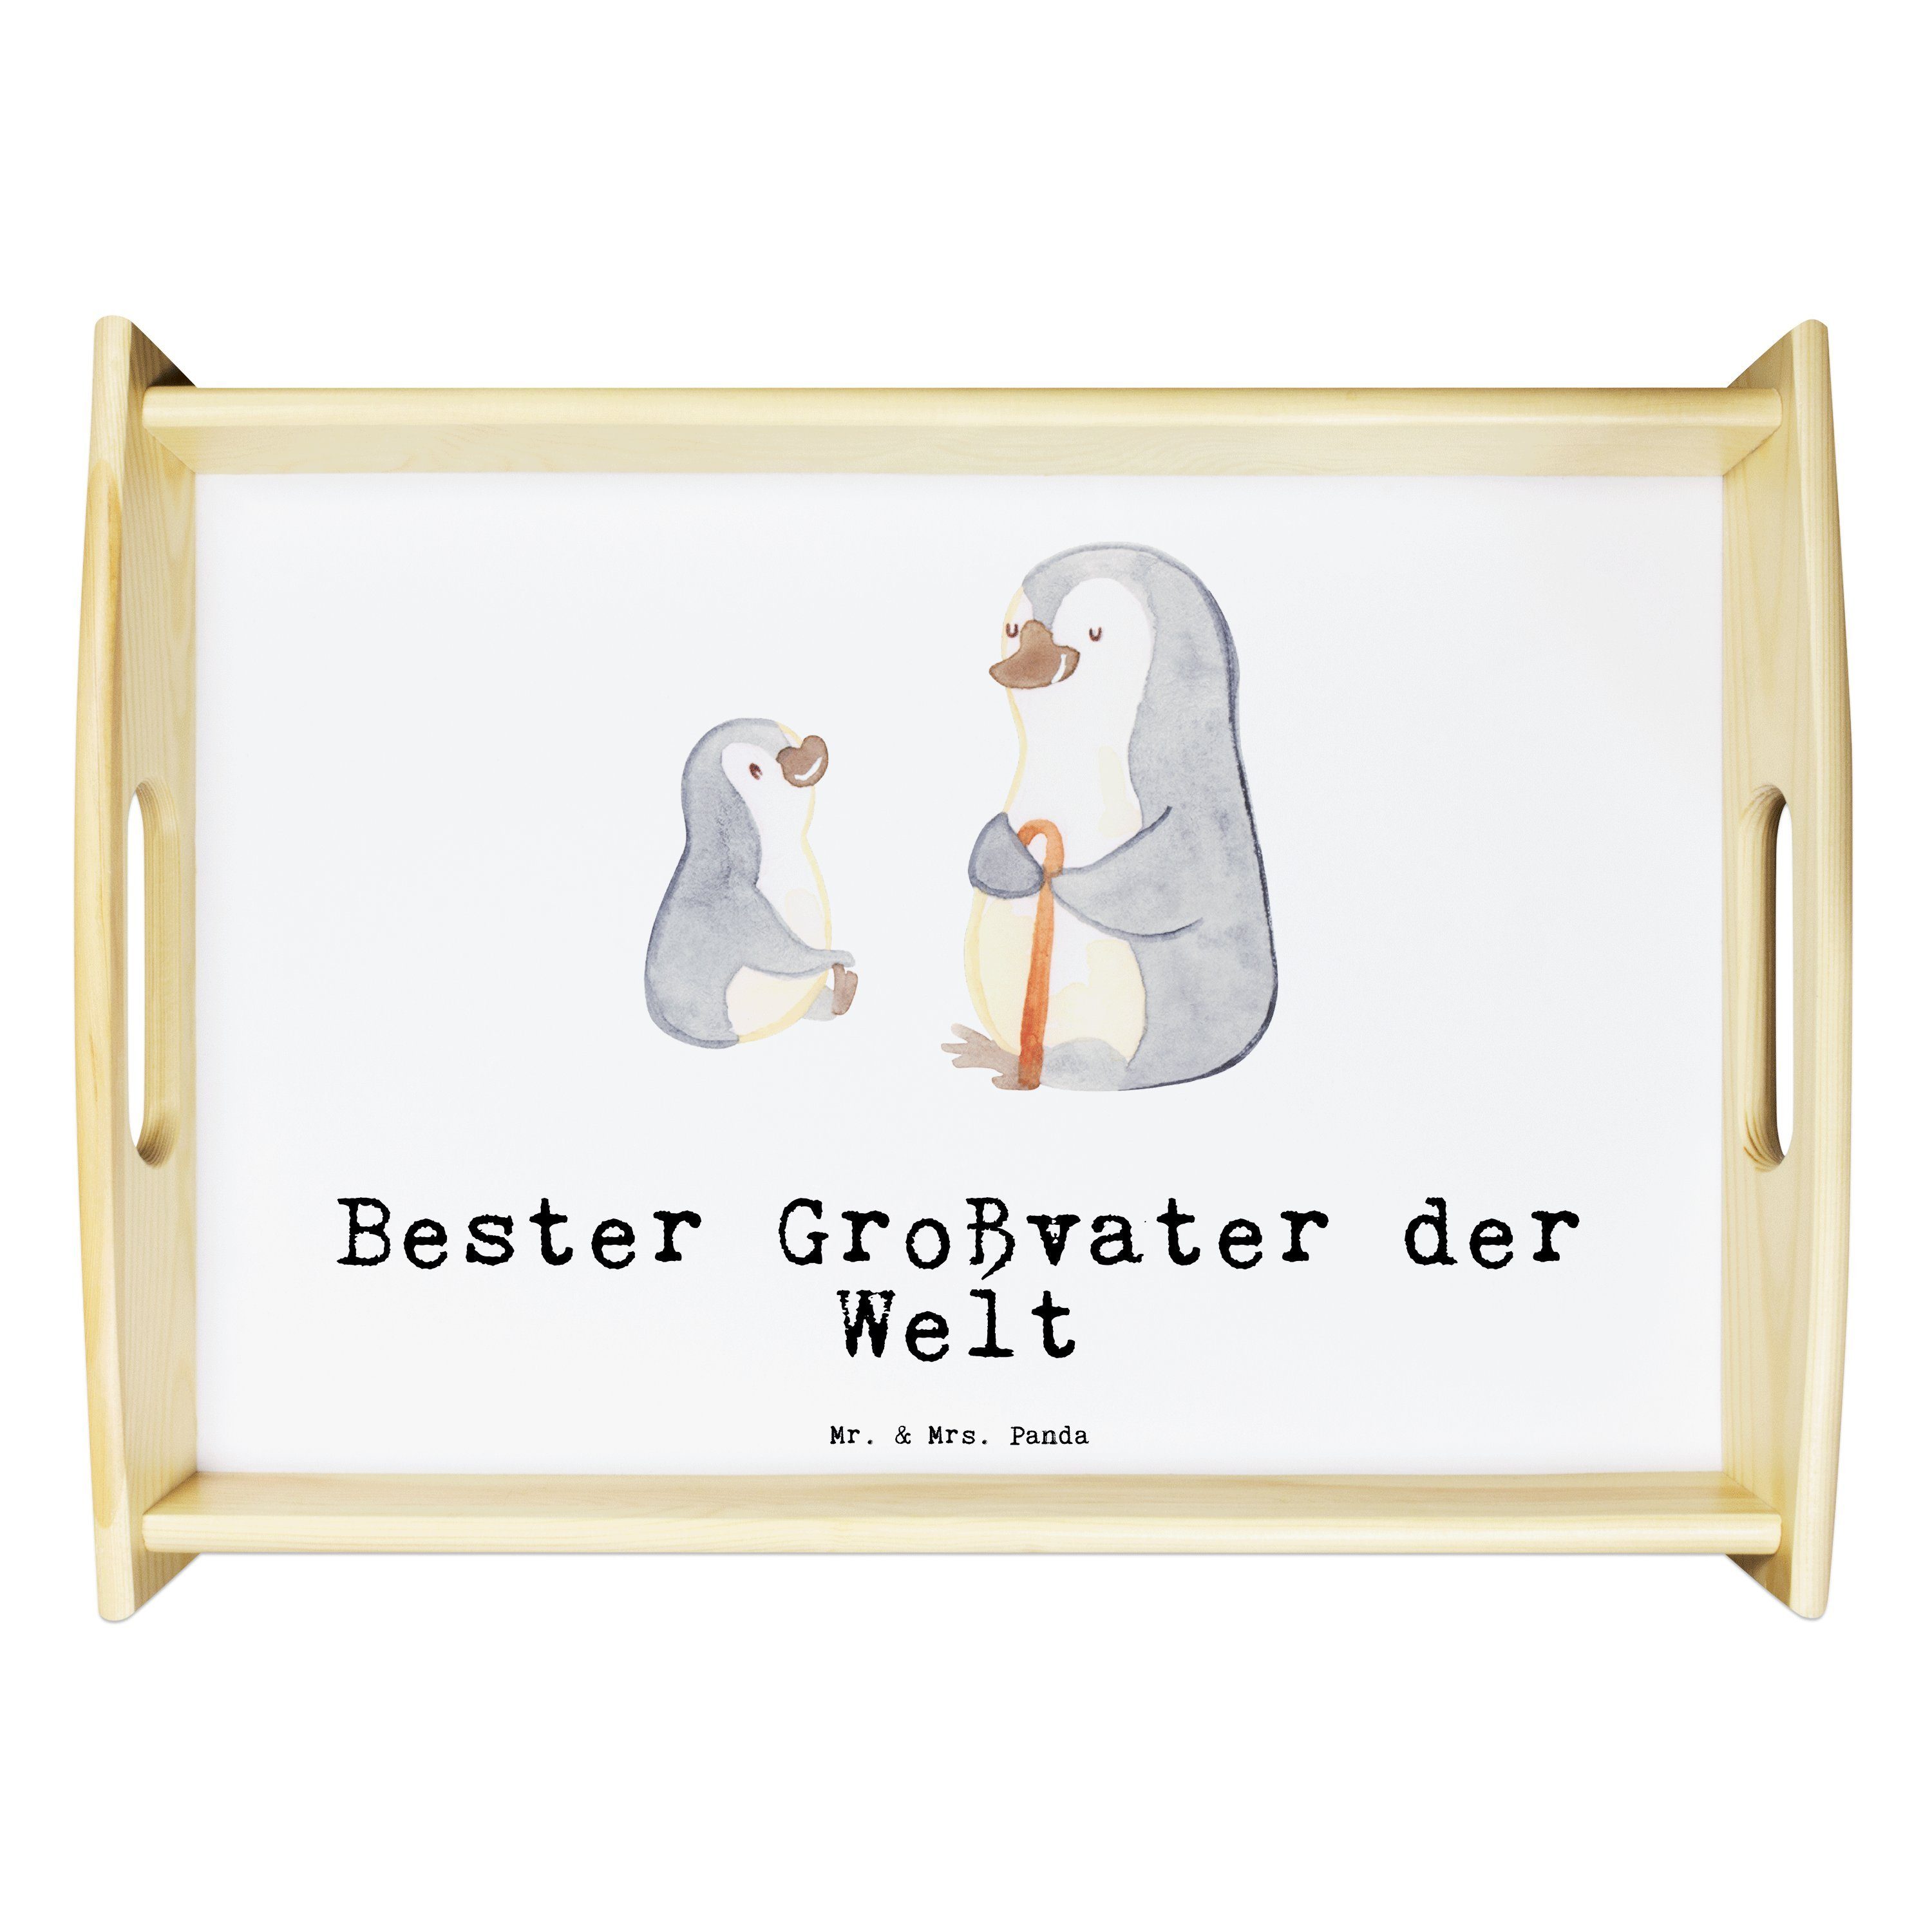 Mr. & Mrs. Panda Tablett Pinguin Bester Großvater der Welt - Weiß - Geschenk, Dekotablett, Enk, Echtholz lasiert, (1-tlg)